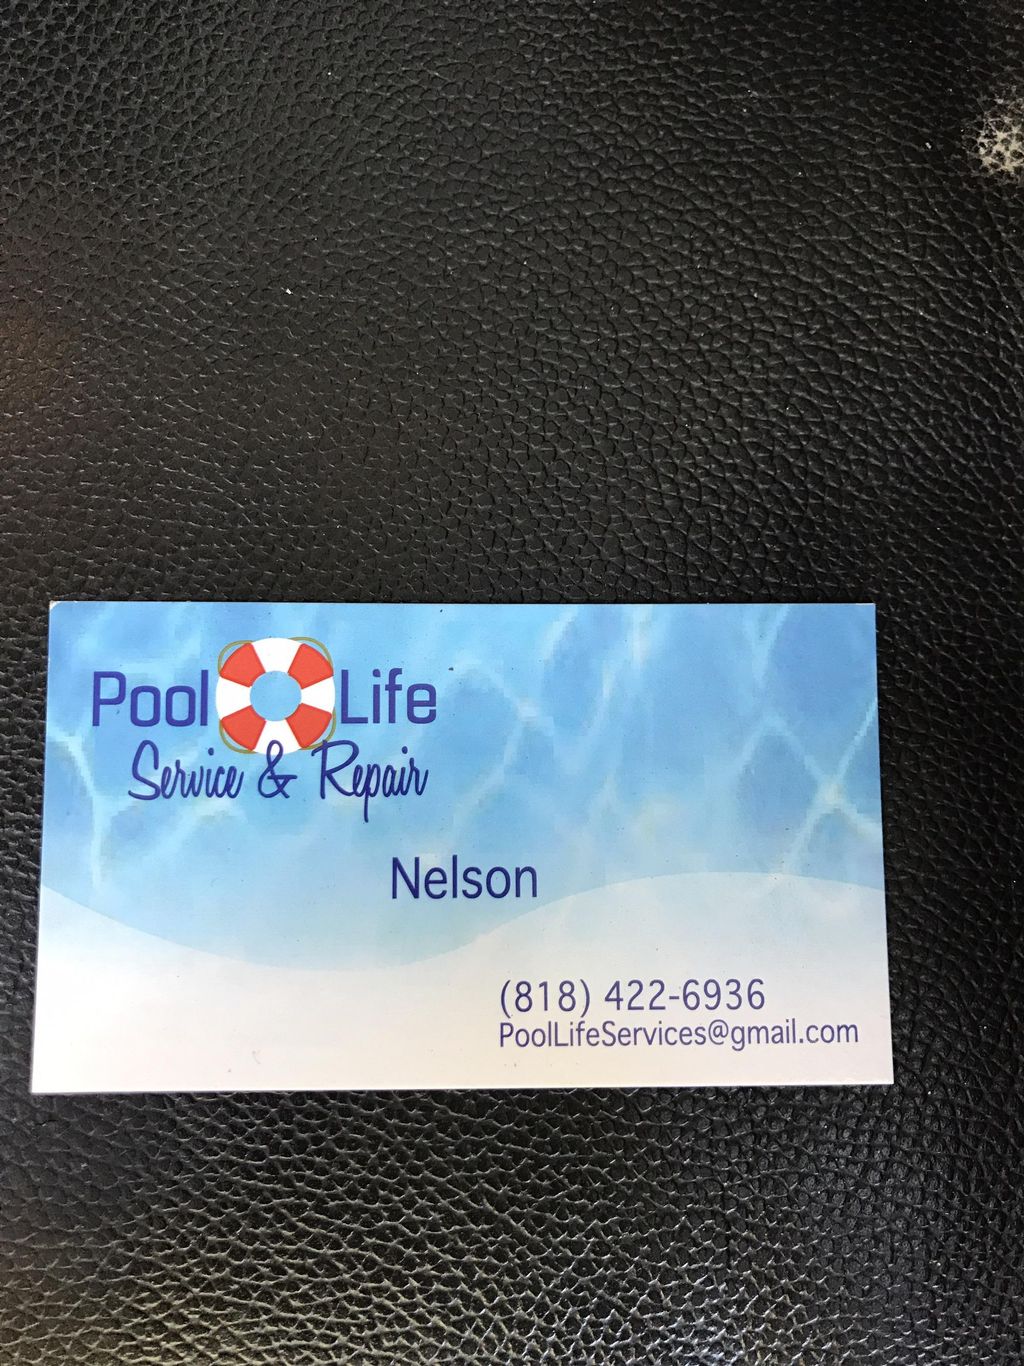 Pool life Service & repair